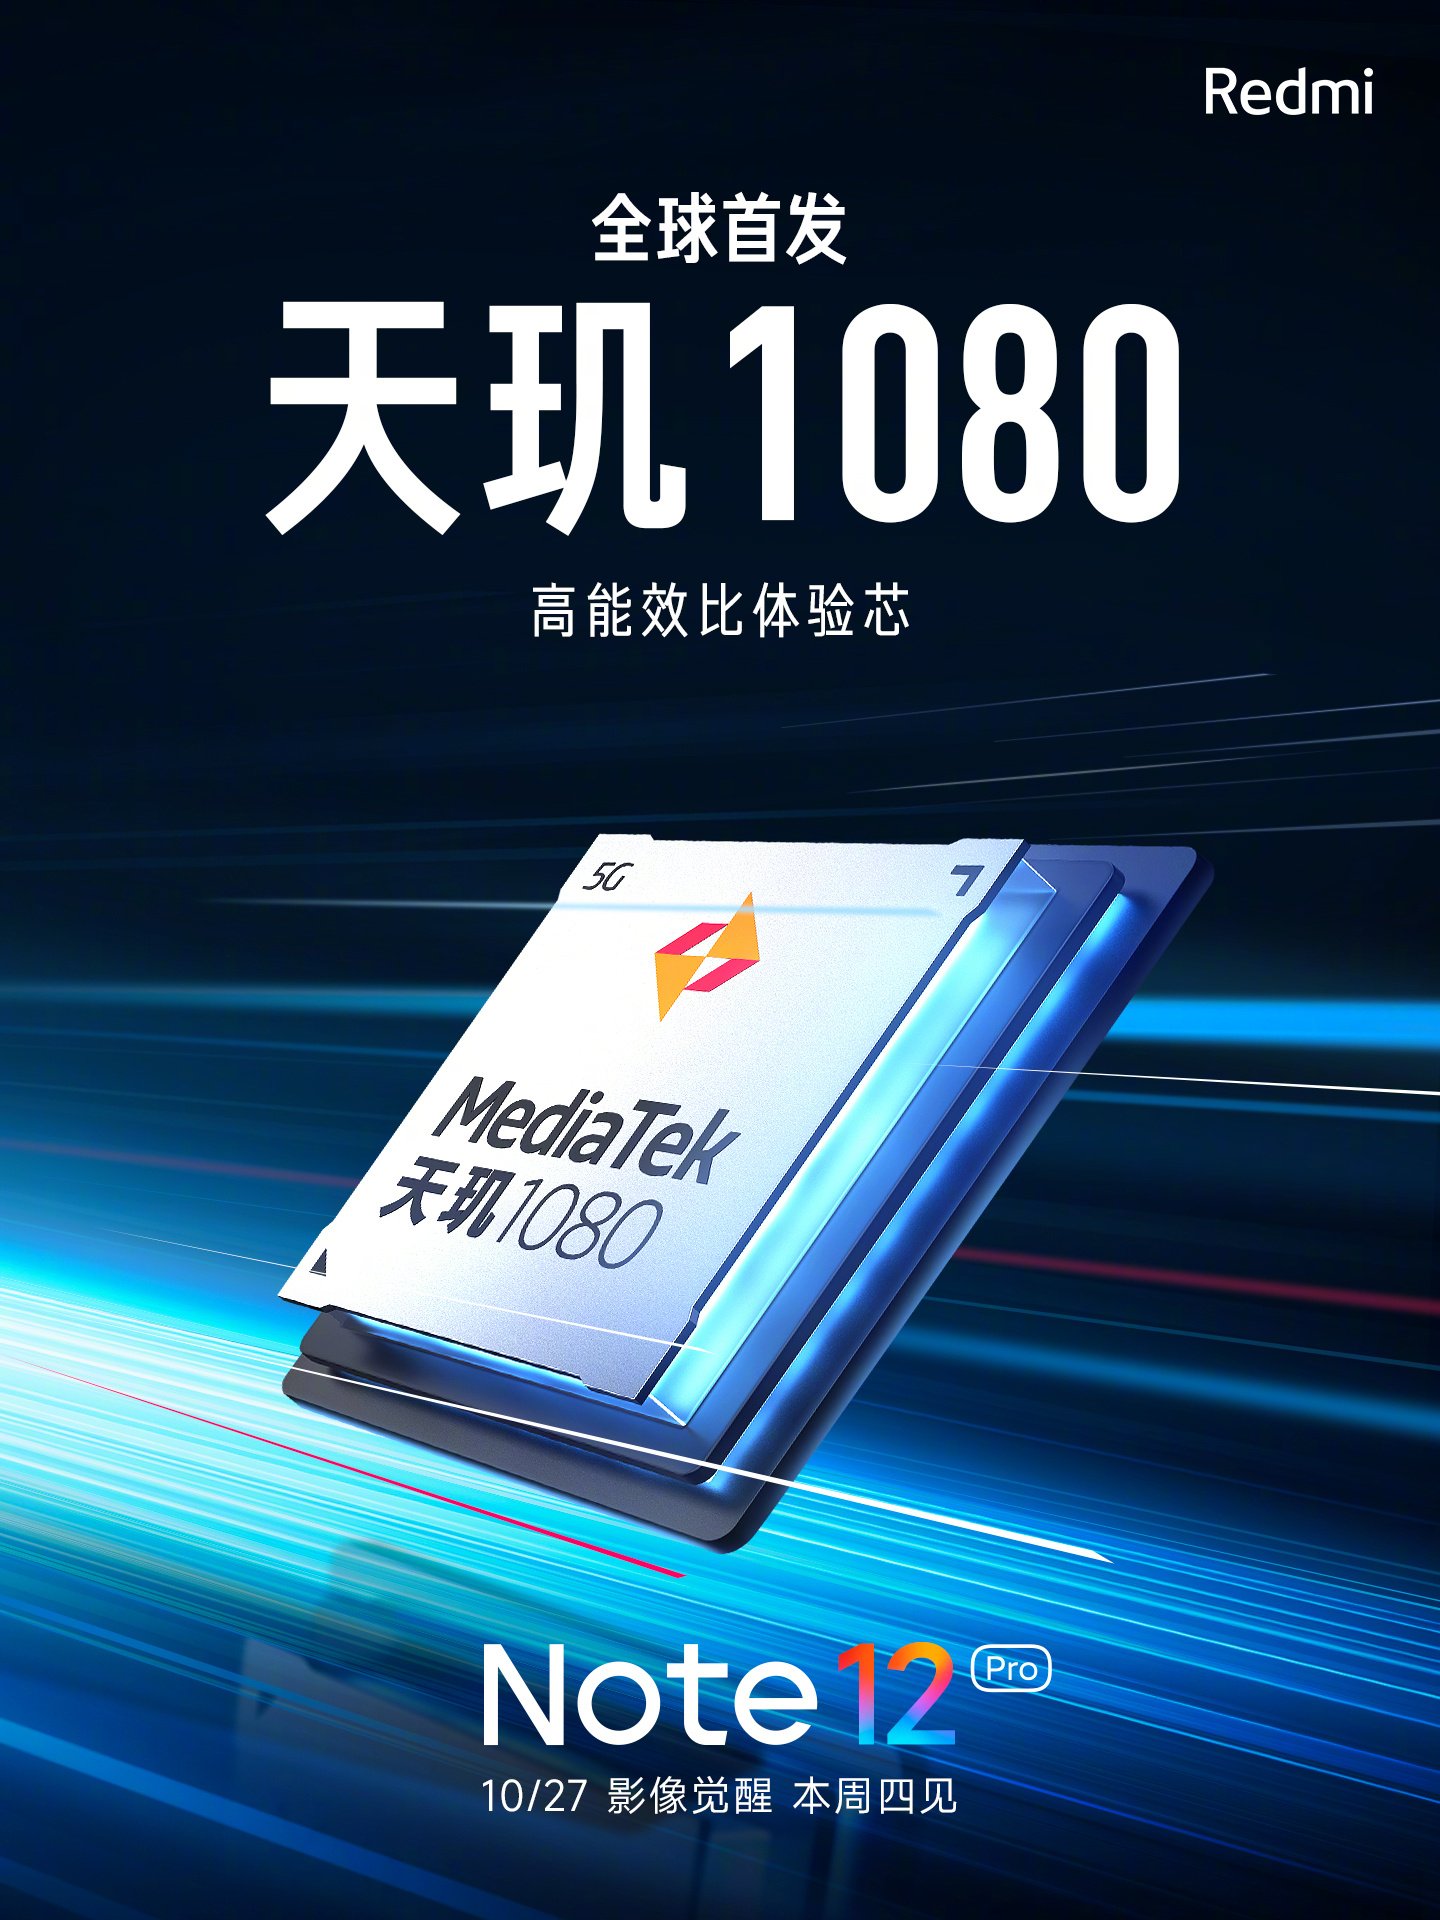 Imagem promocional do Redmi 12 destaca o chipset Dimensity 1080 da MediaTek.